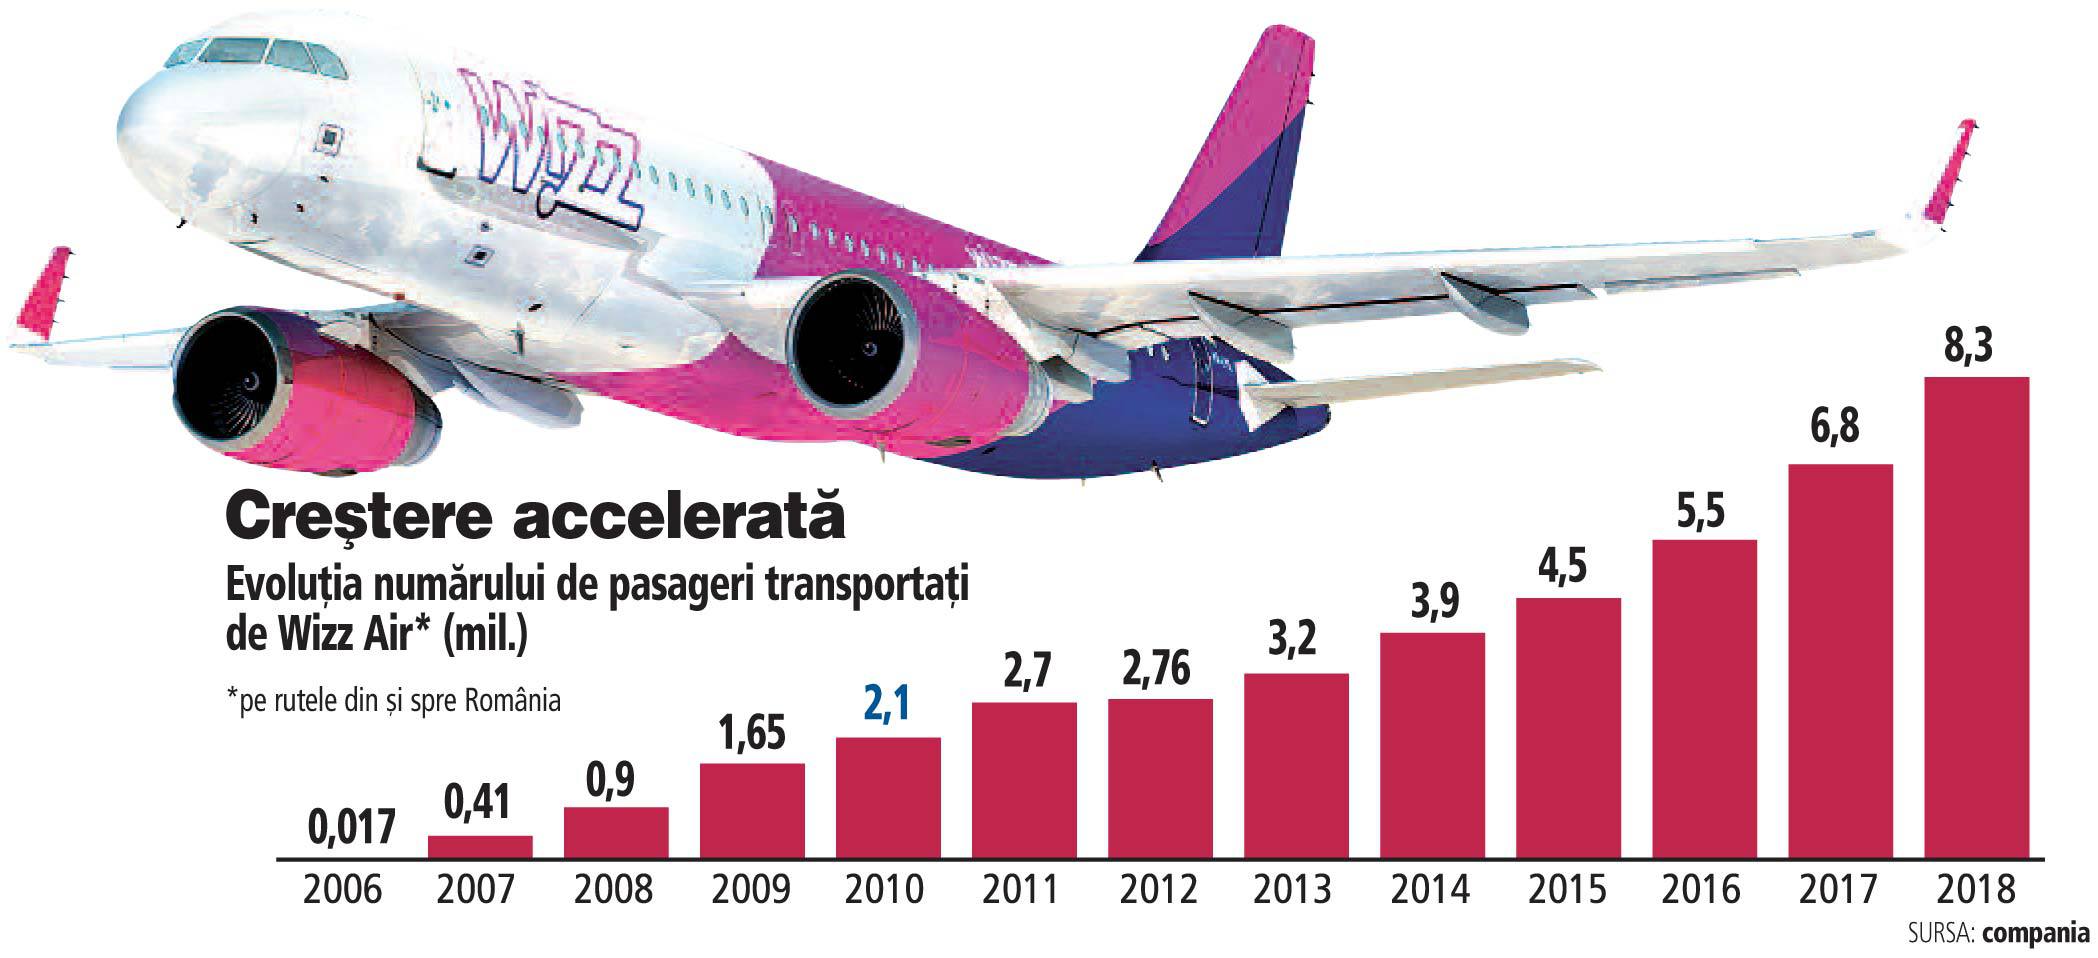 Zboară tot mai sus. Compania aeriană Wizz Air vrea să transporte 9,5 milioane de pasageri din România în 2019